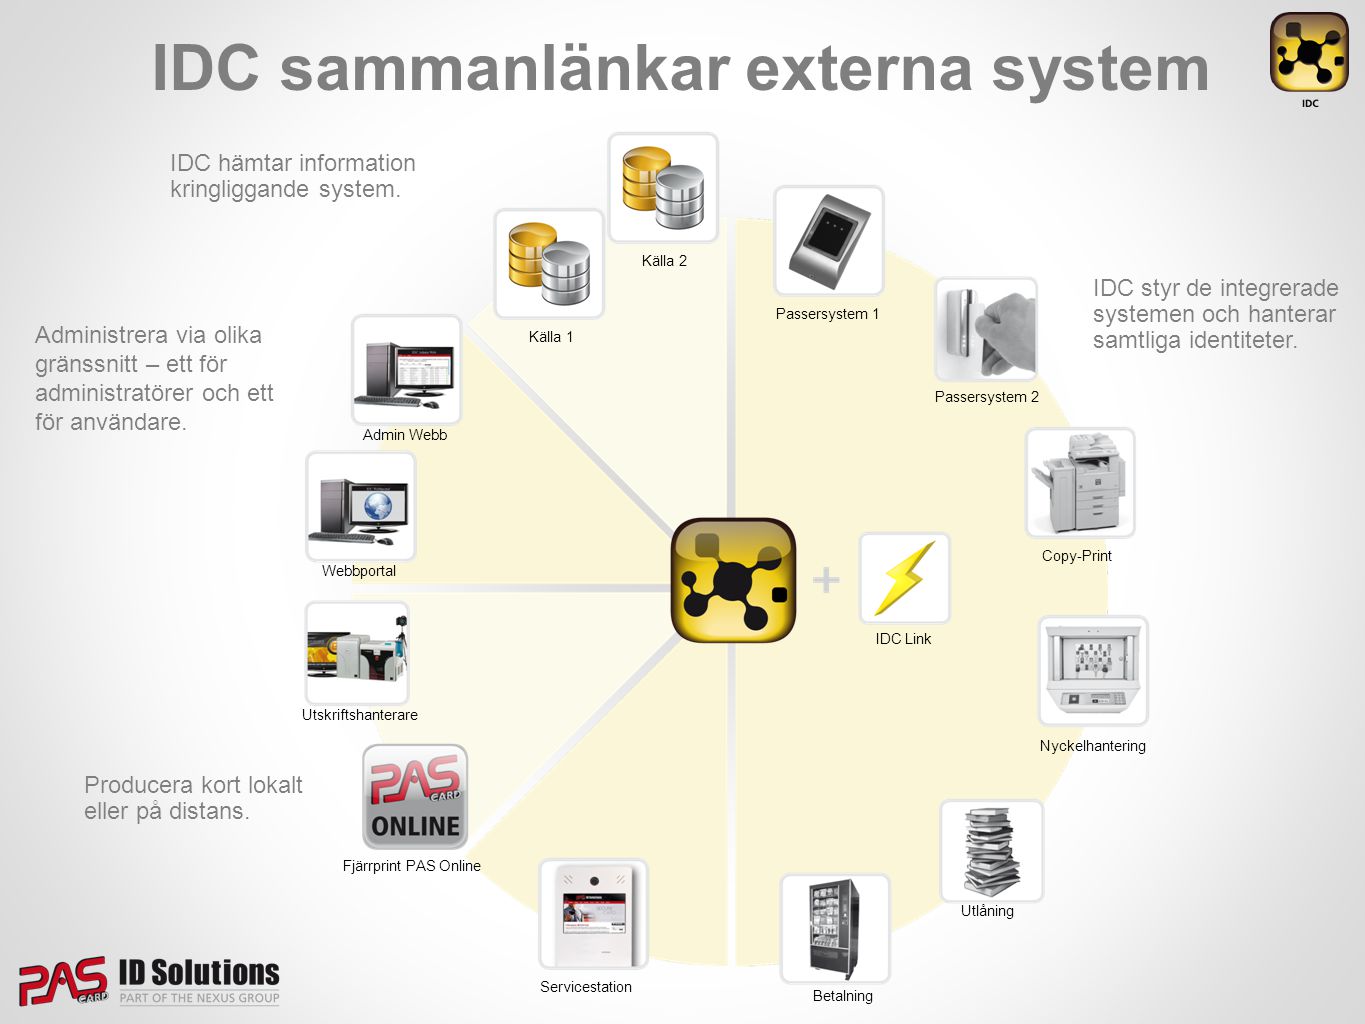 IDC sammanlänkar externa system